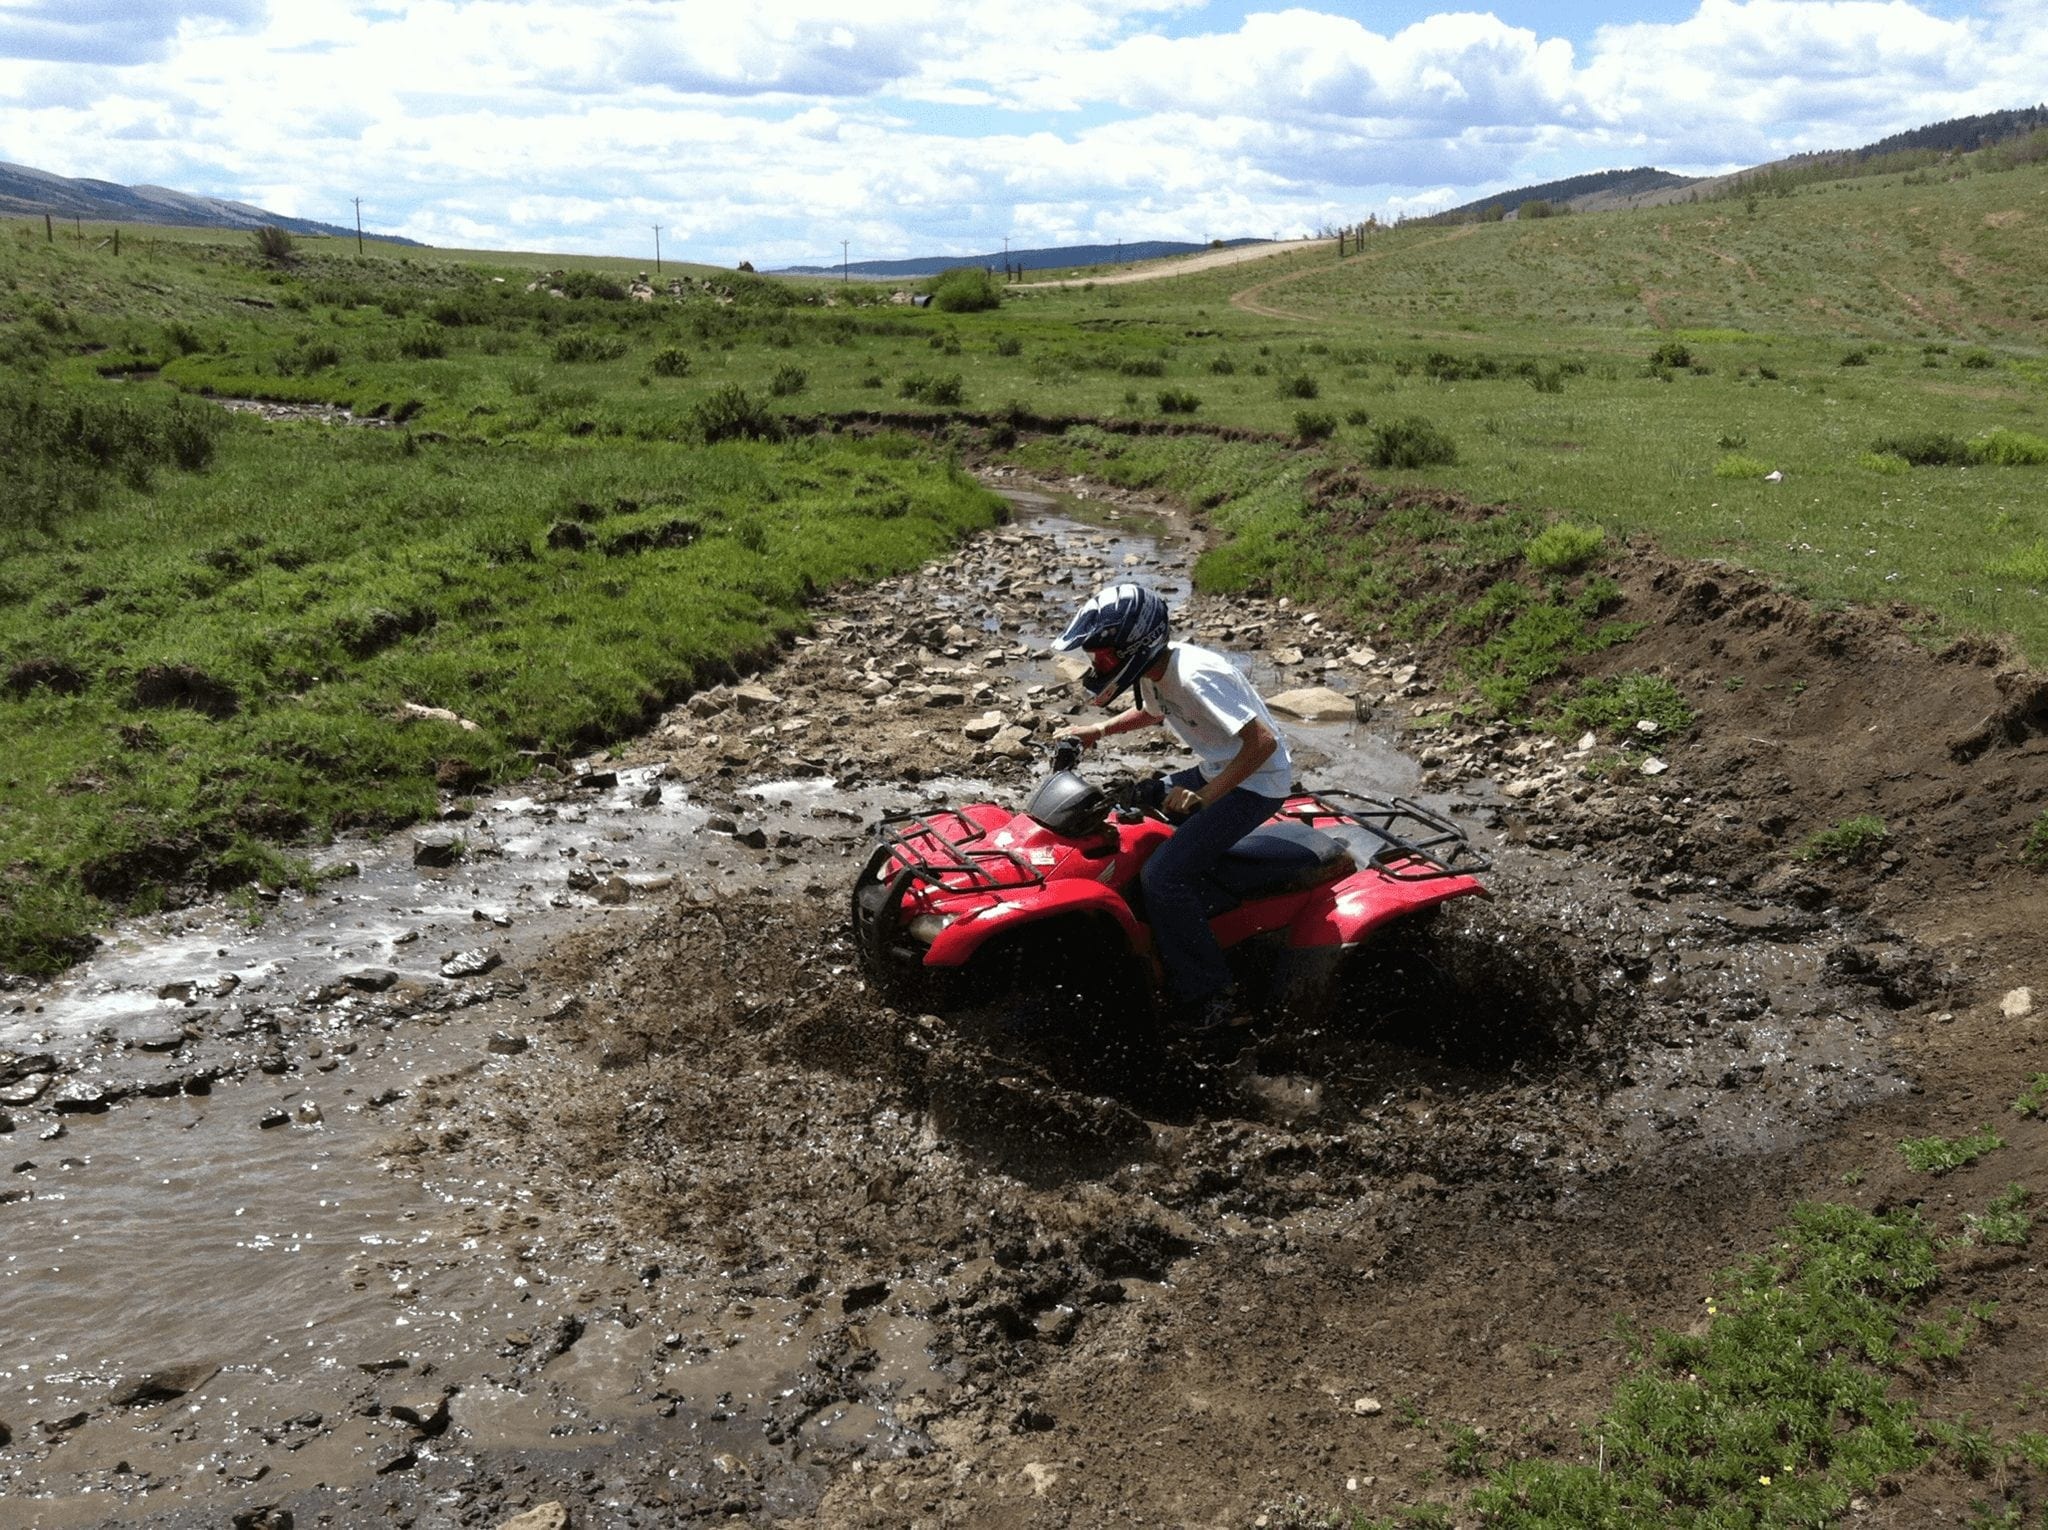 An ATV Rider at American Safari Ranch.